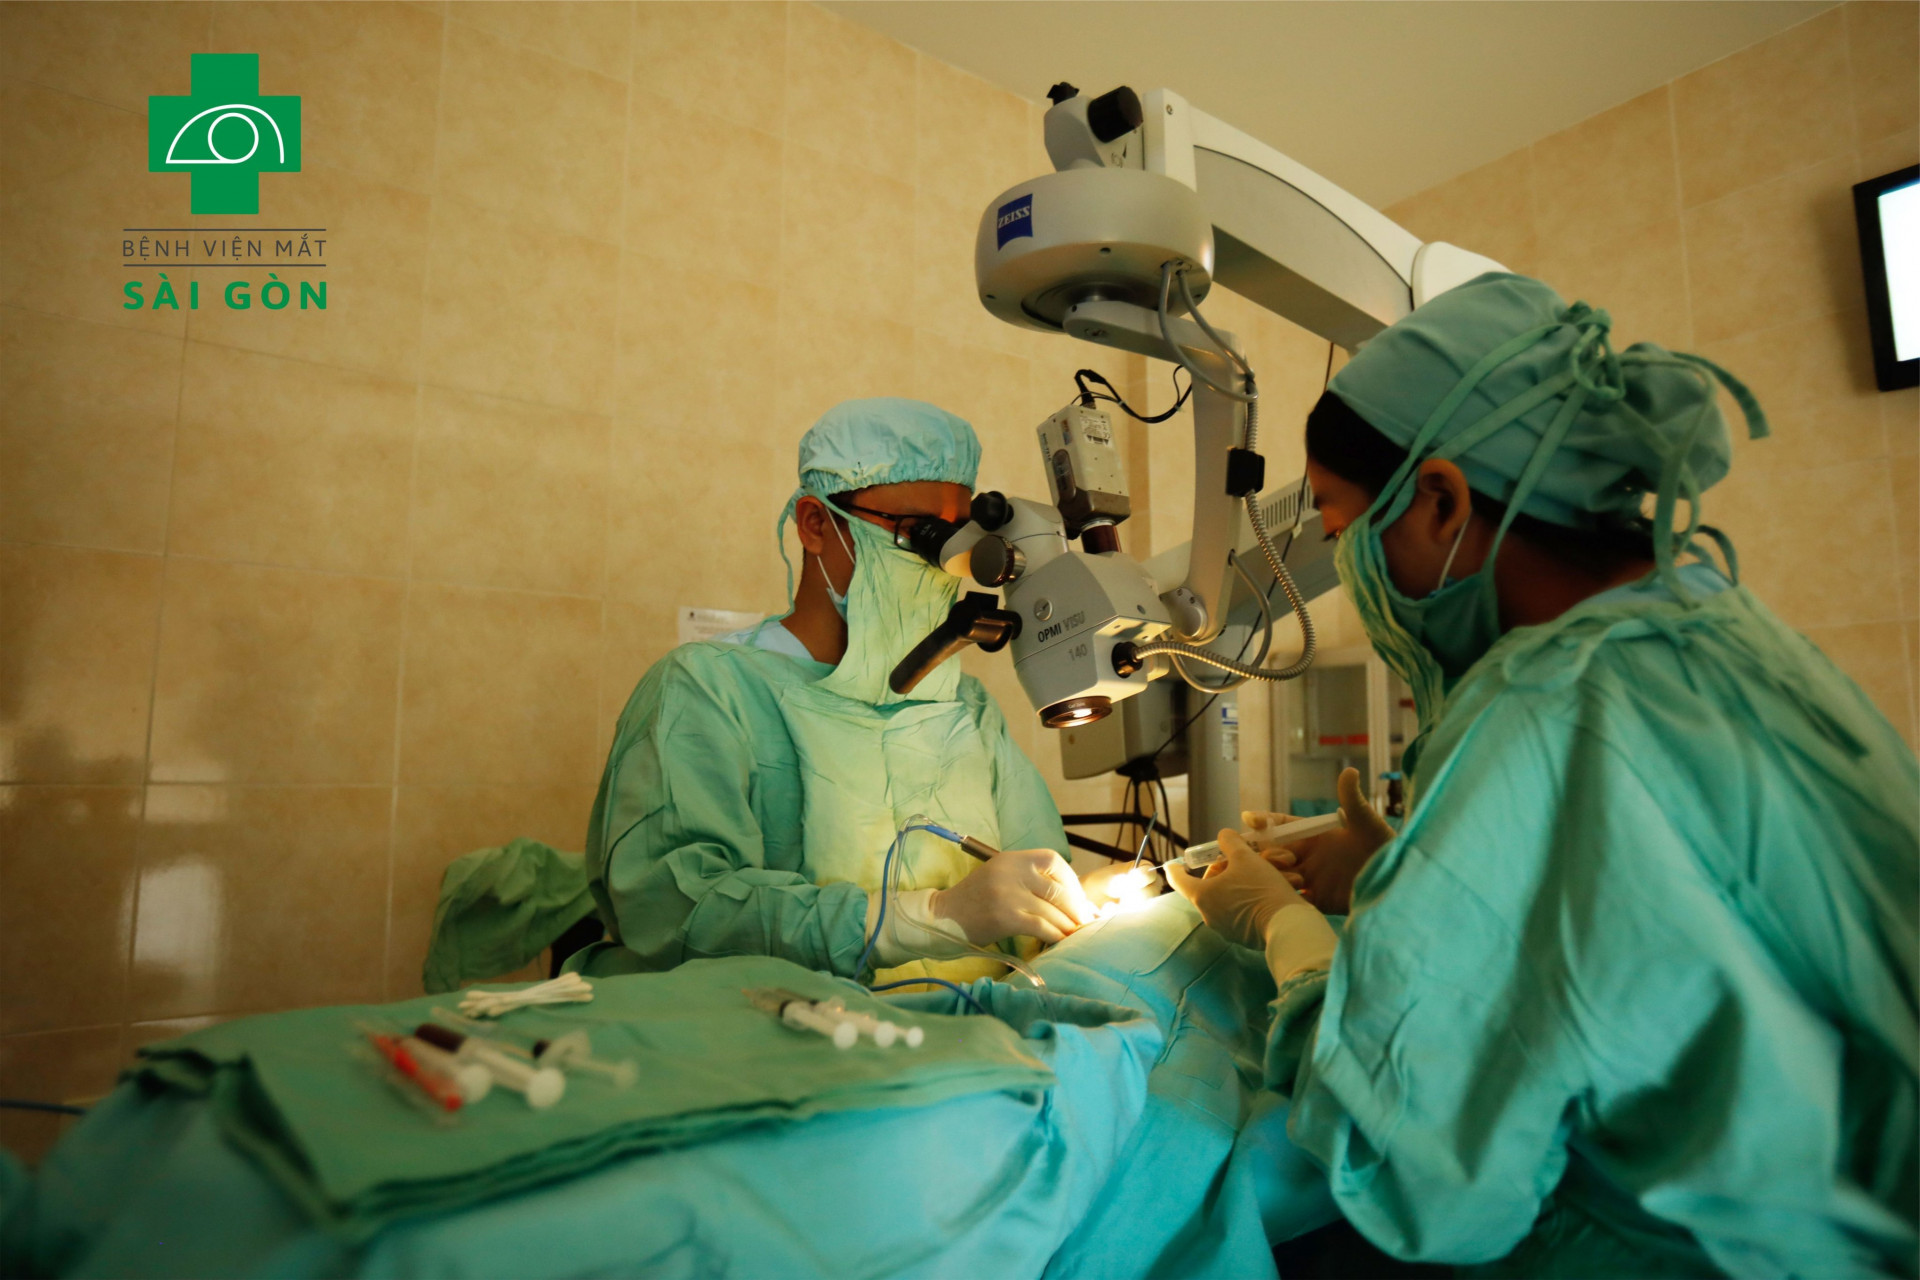 Thực hiện ca phẫu thuật mắt tại Bệnh viện Mắt Sài Gòn Nha Trang